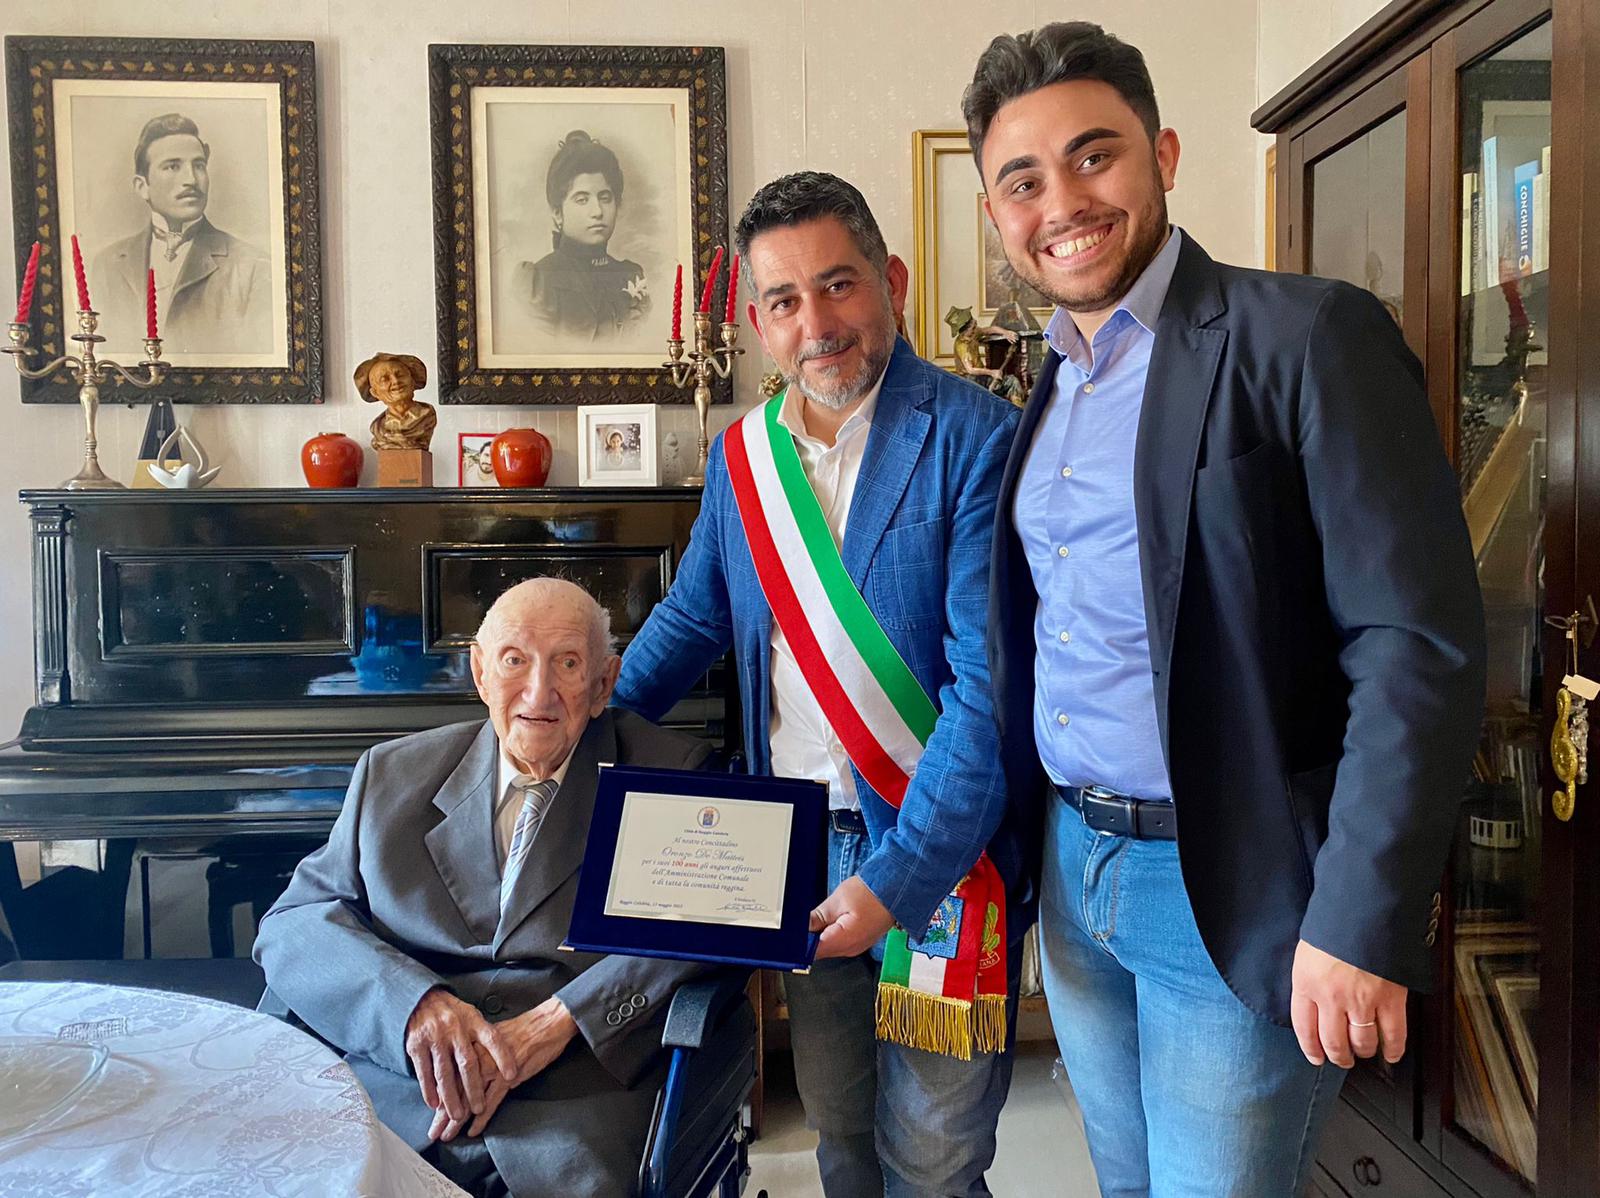 Reggio, il signor Oronzo De Matteis compie 100 anni